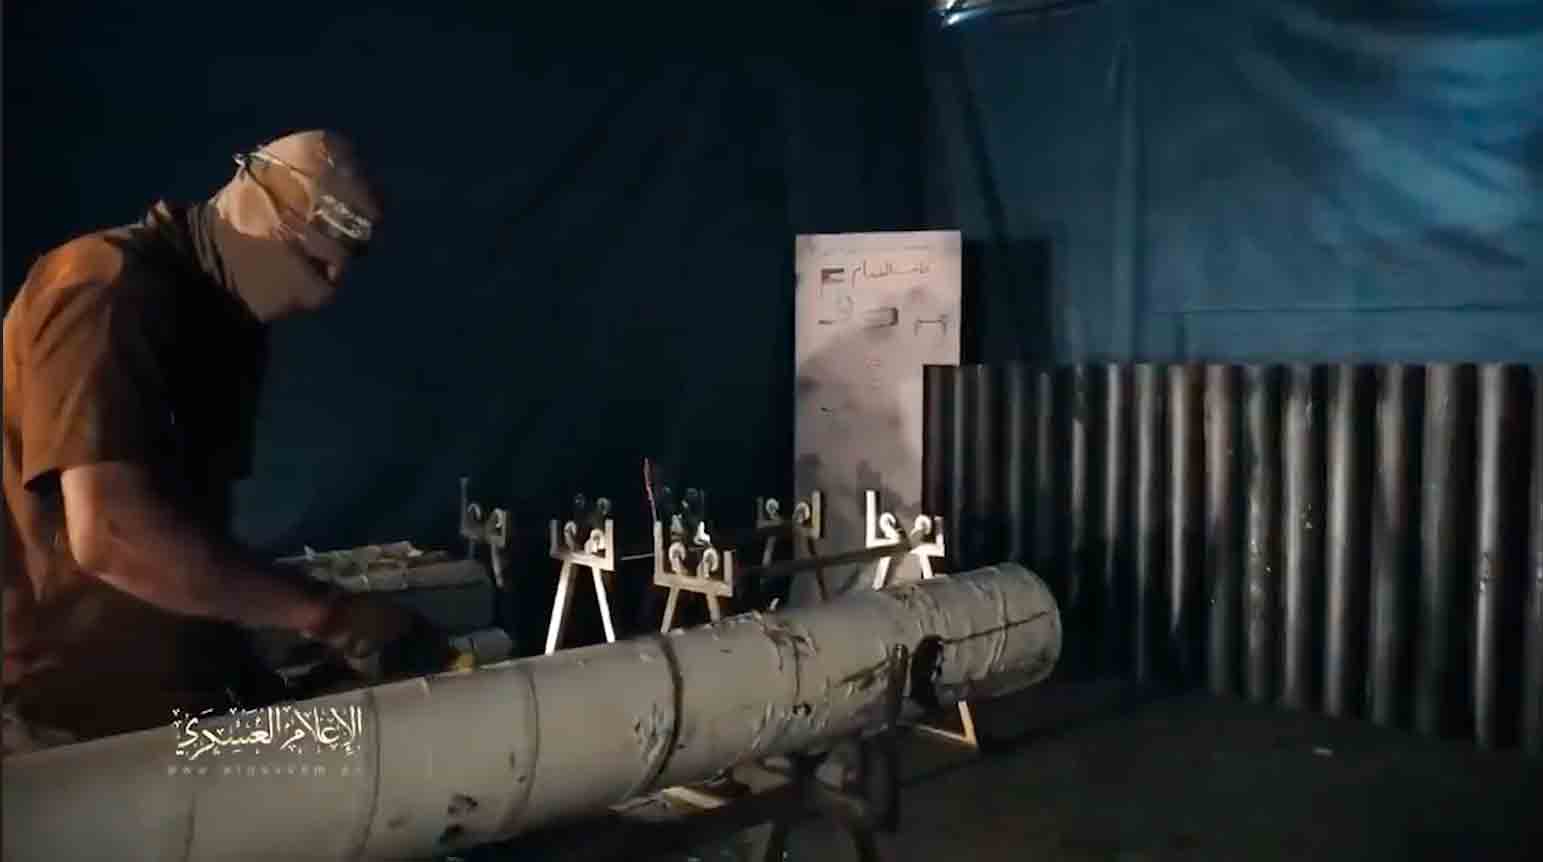 הסרטון מציג את חמאס מכינה טילים מצנרות שהוצאו מתשתיות הביוב. צילום וסרטון: העתקה מטוויטר